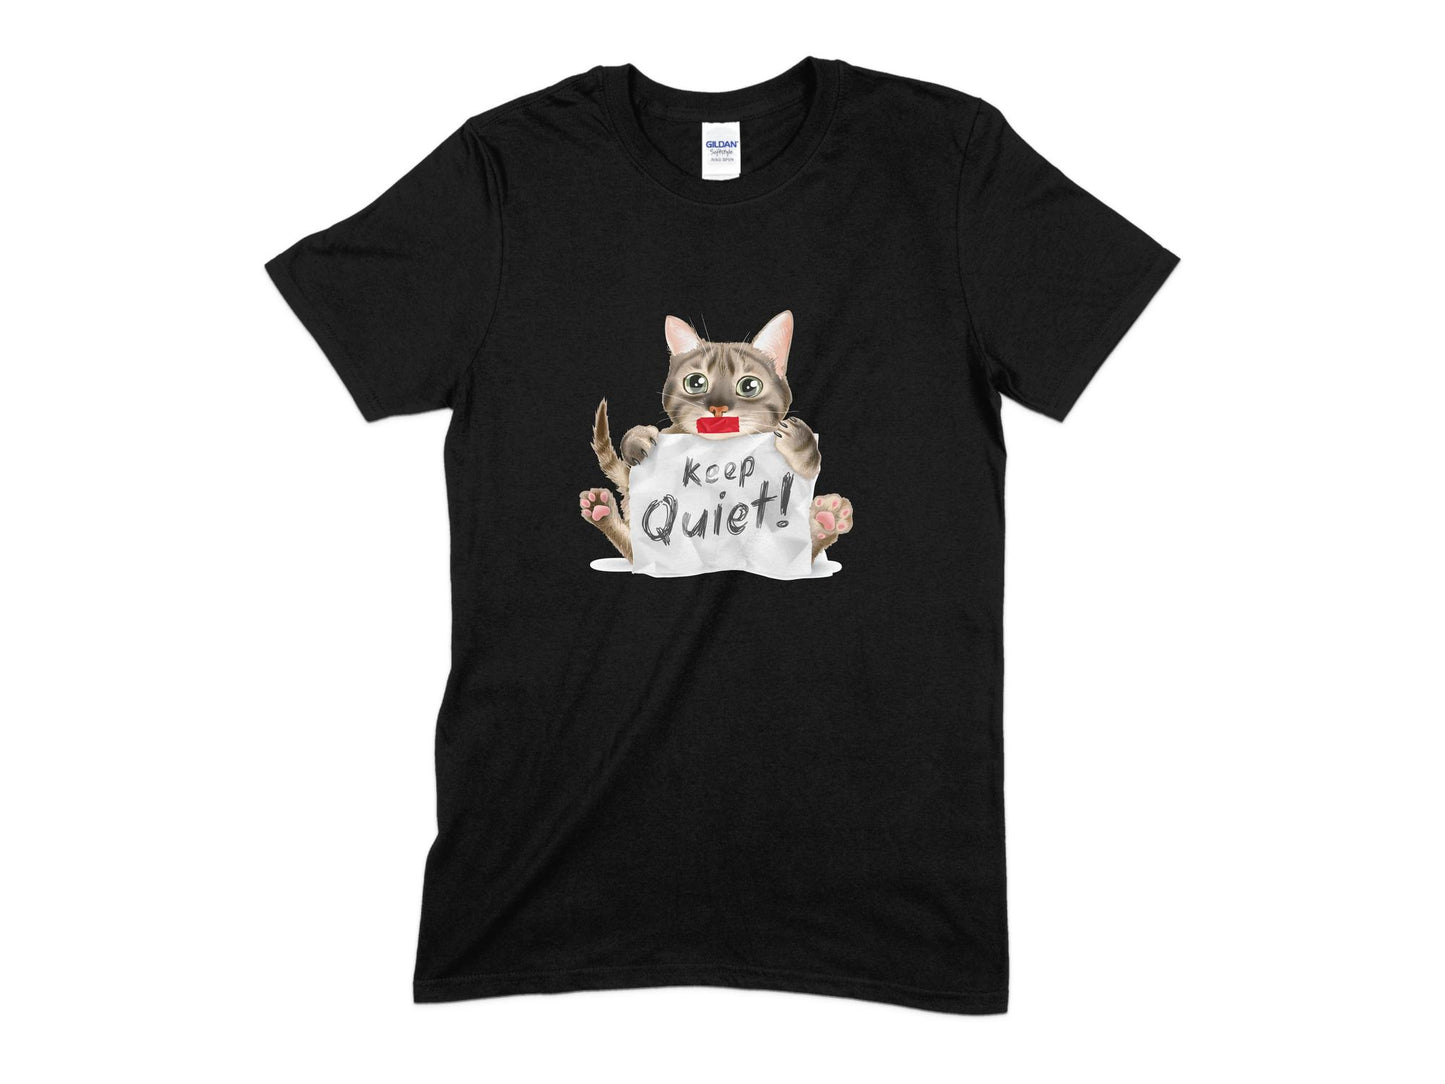 Keep Quite Cat T-Shirt, Cute Cat Shirt